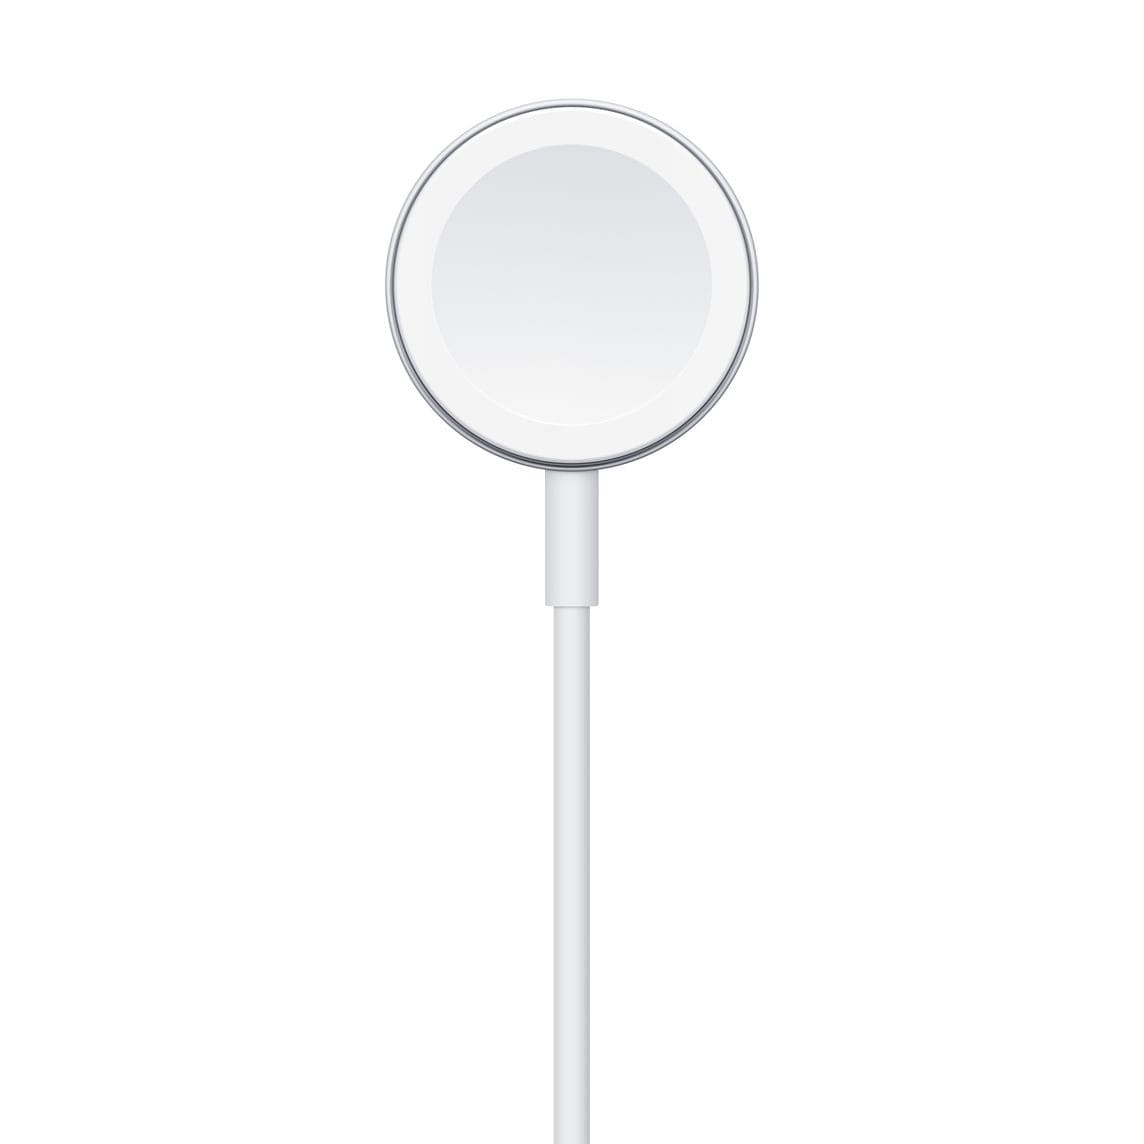 Фото — Кабель Apple USB с магнитным креплением для зарядки Apple Watch, 1 м, белый